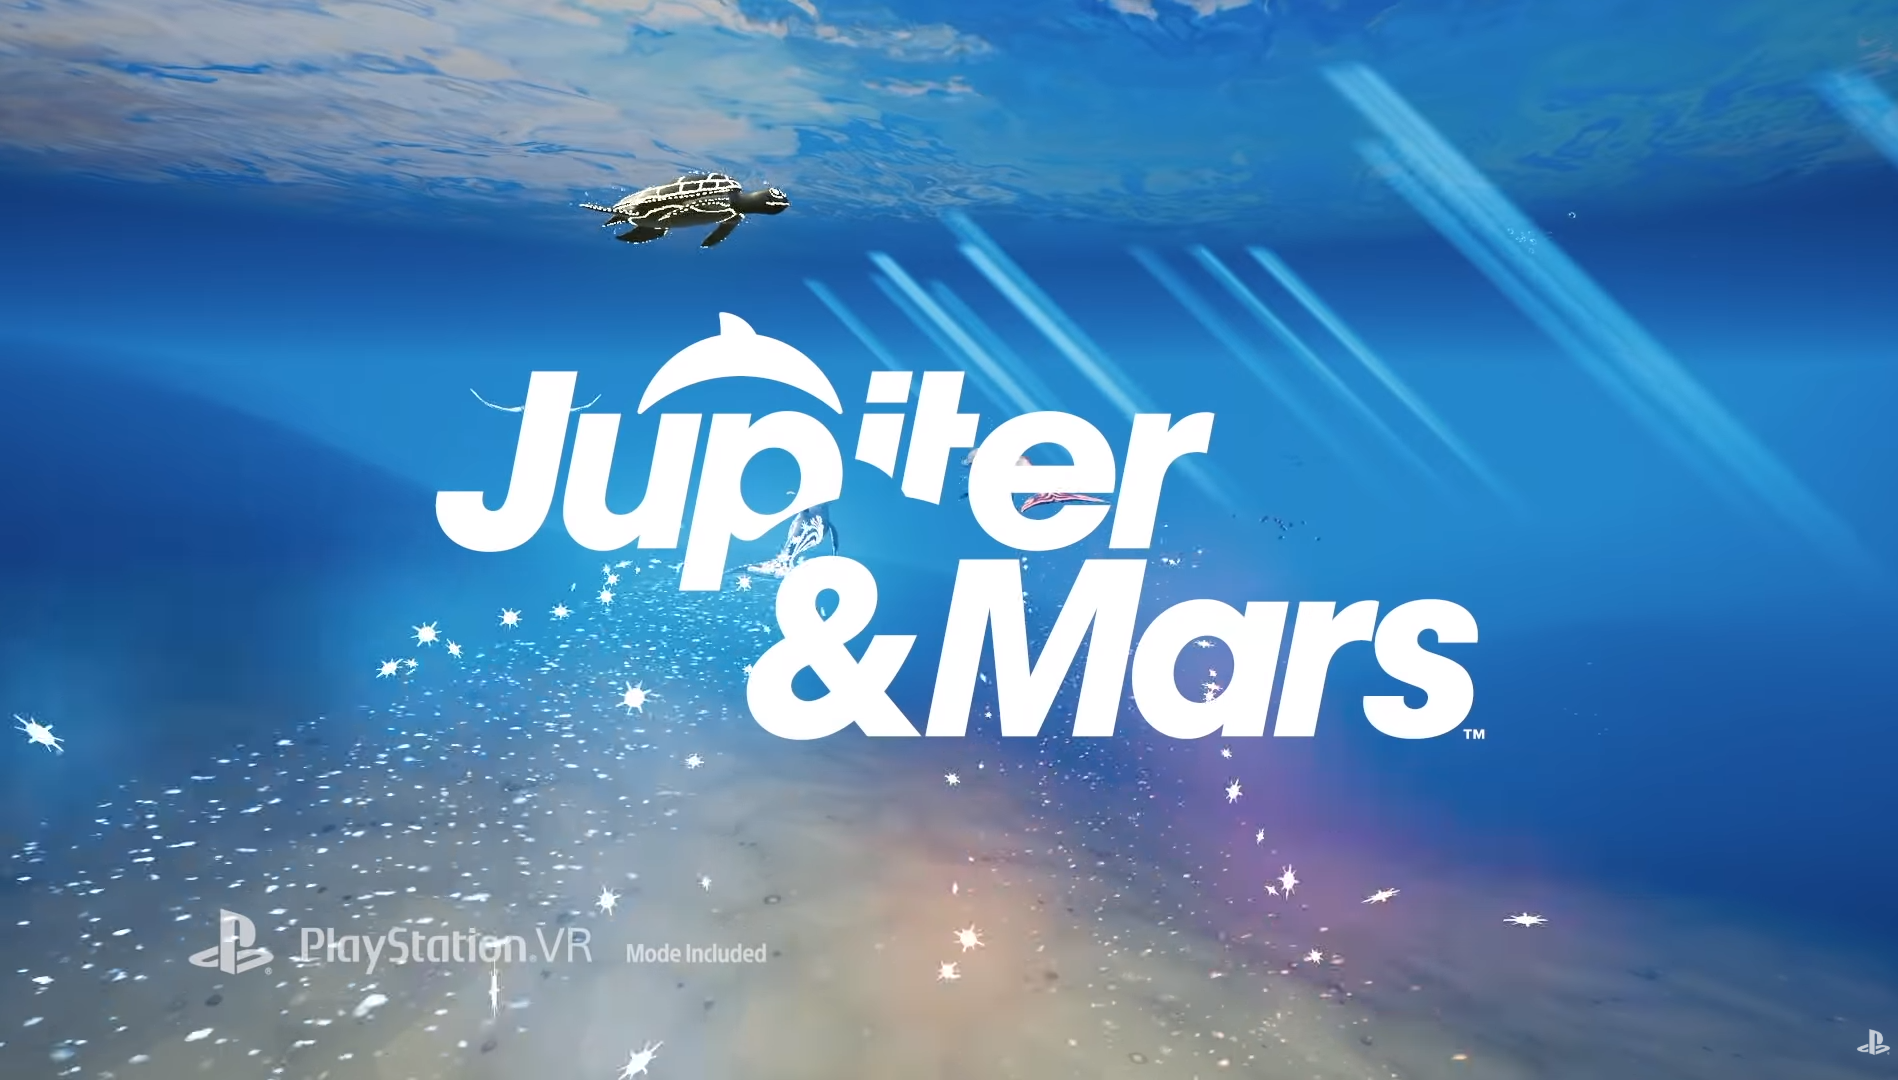 Jupiter & Mars Review